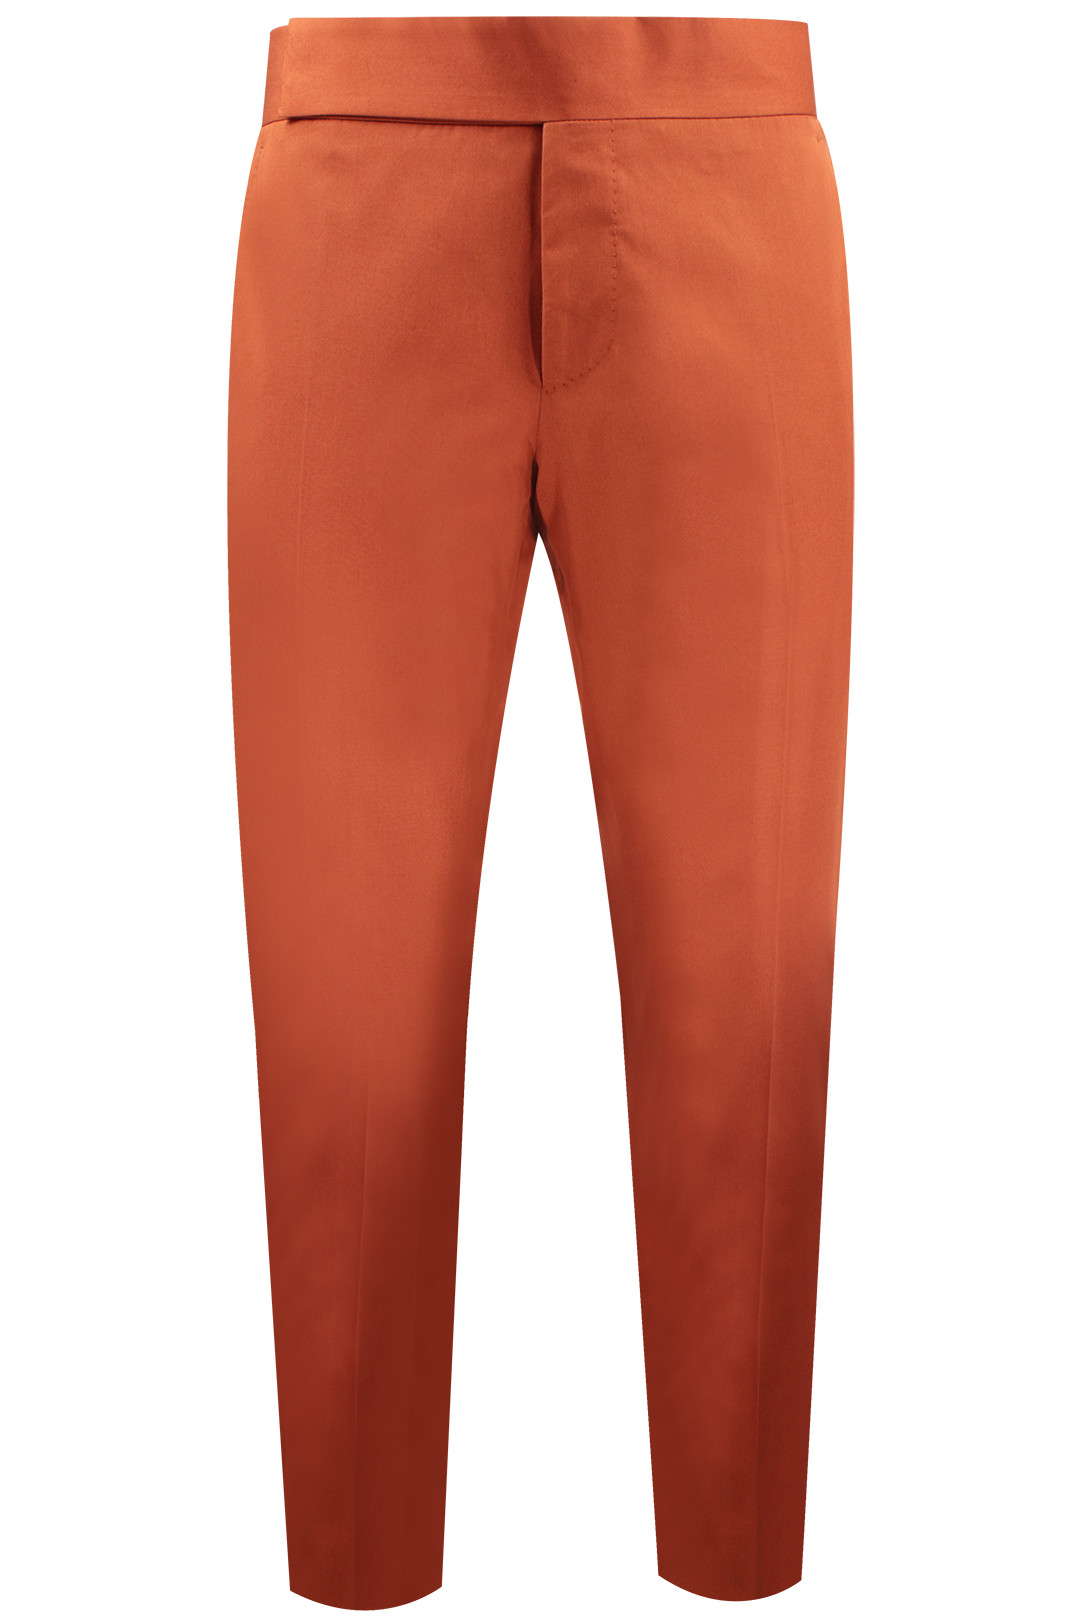 Pantalone con cinta sartoriale in cotone color coccio